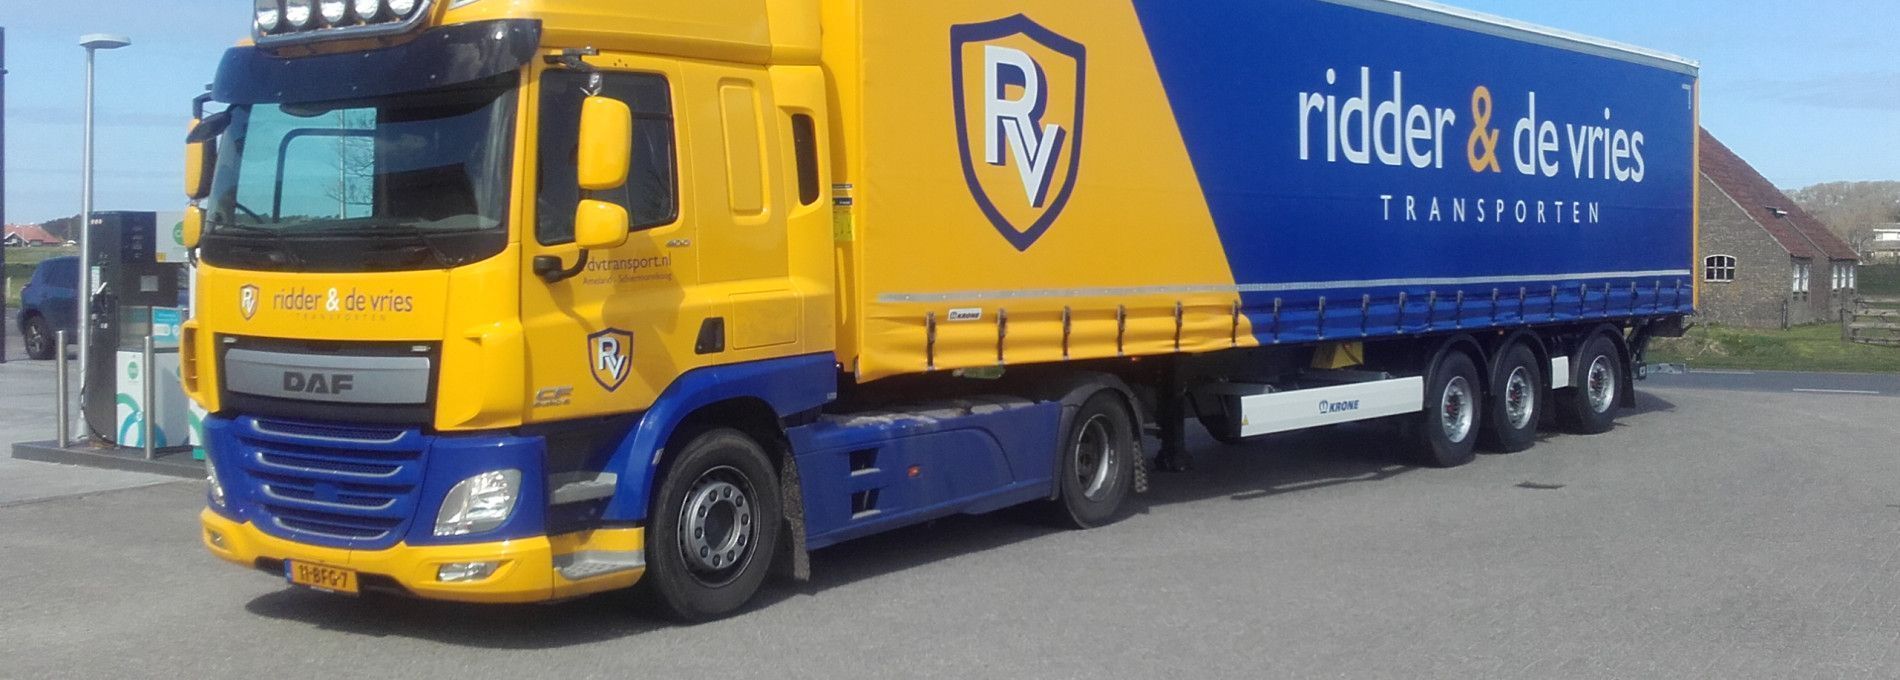 Ridder & De Vries Transporten - VVV Ameland